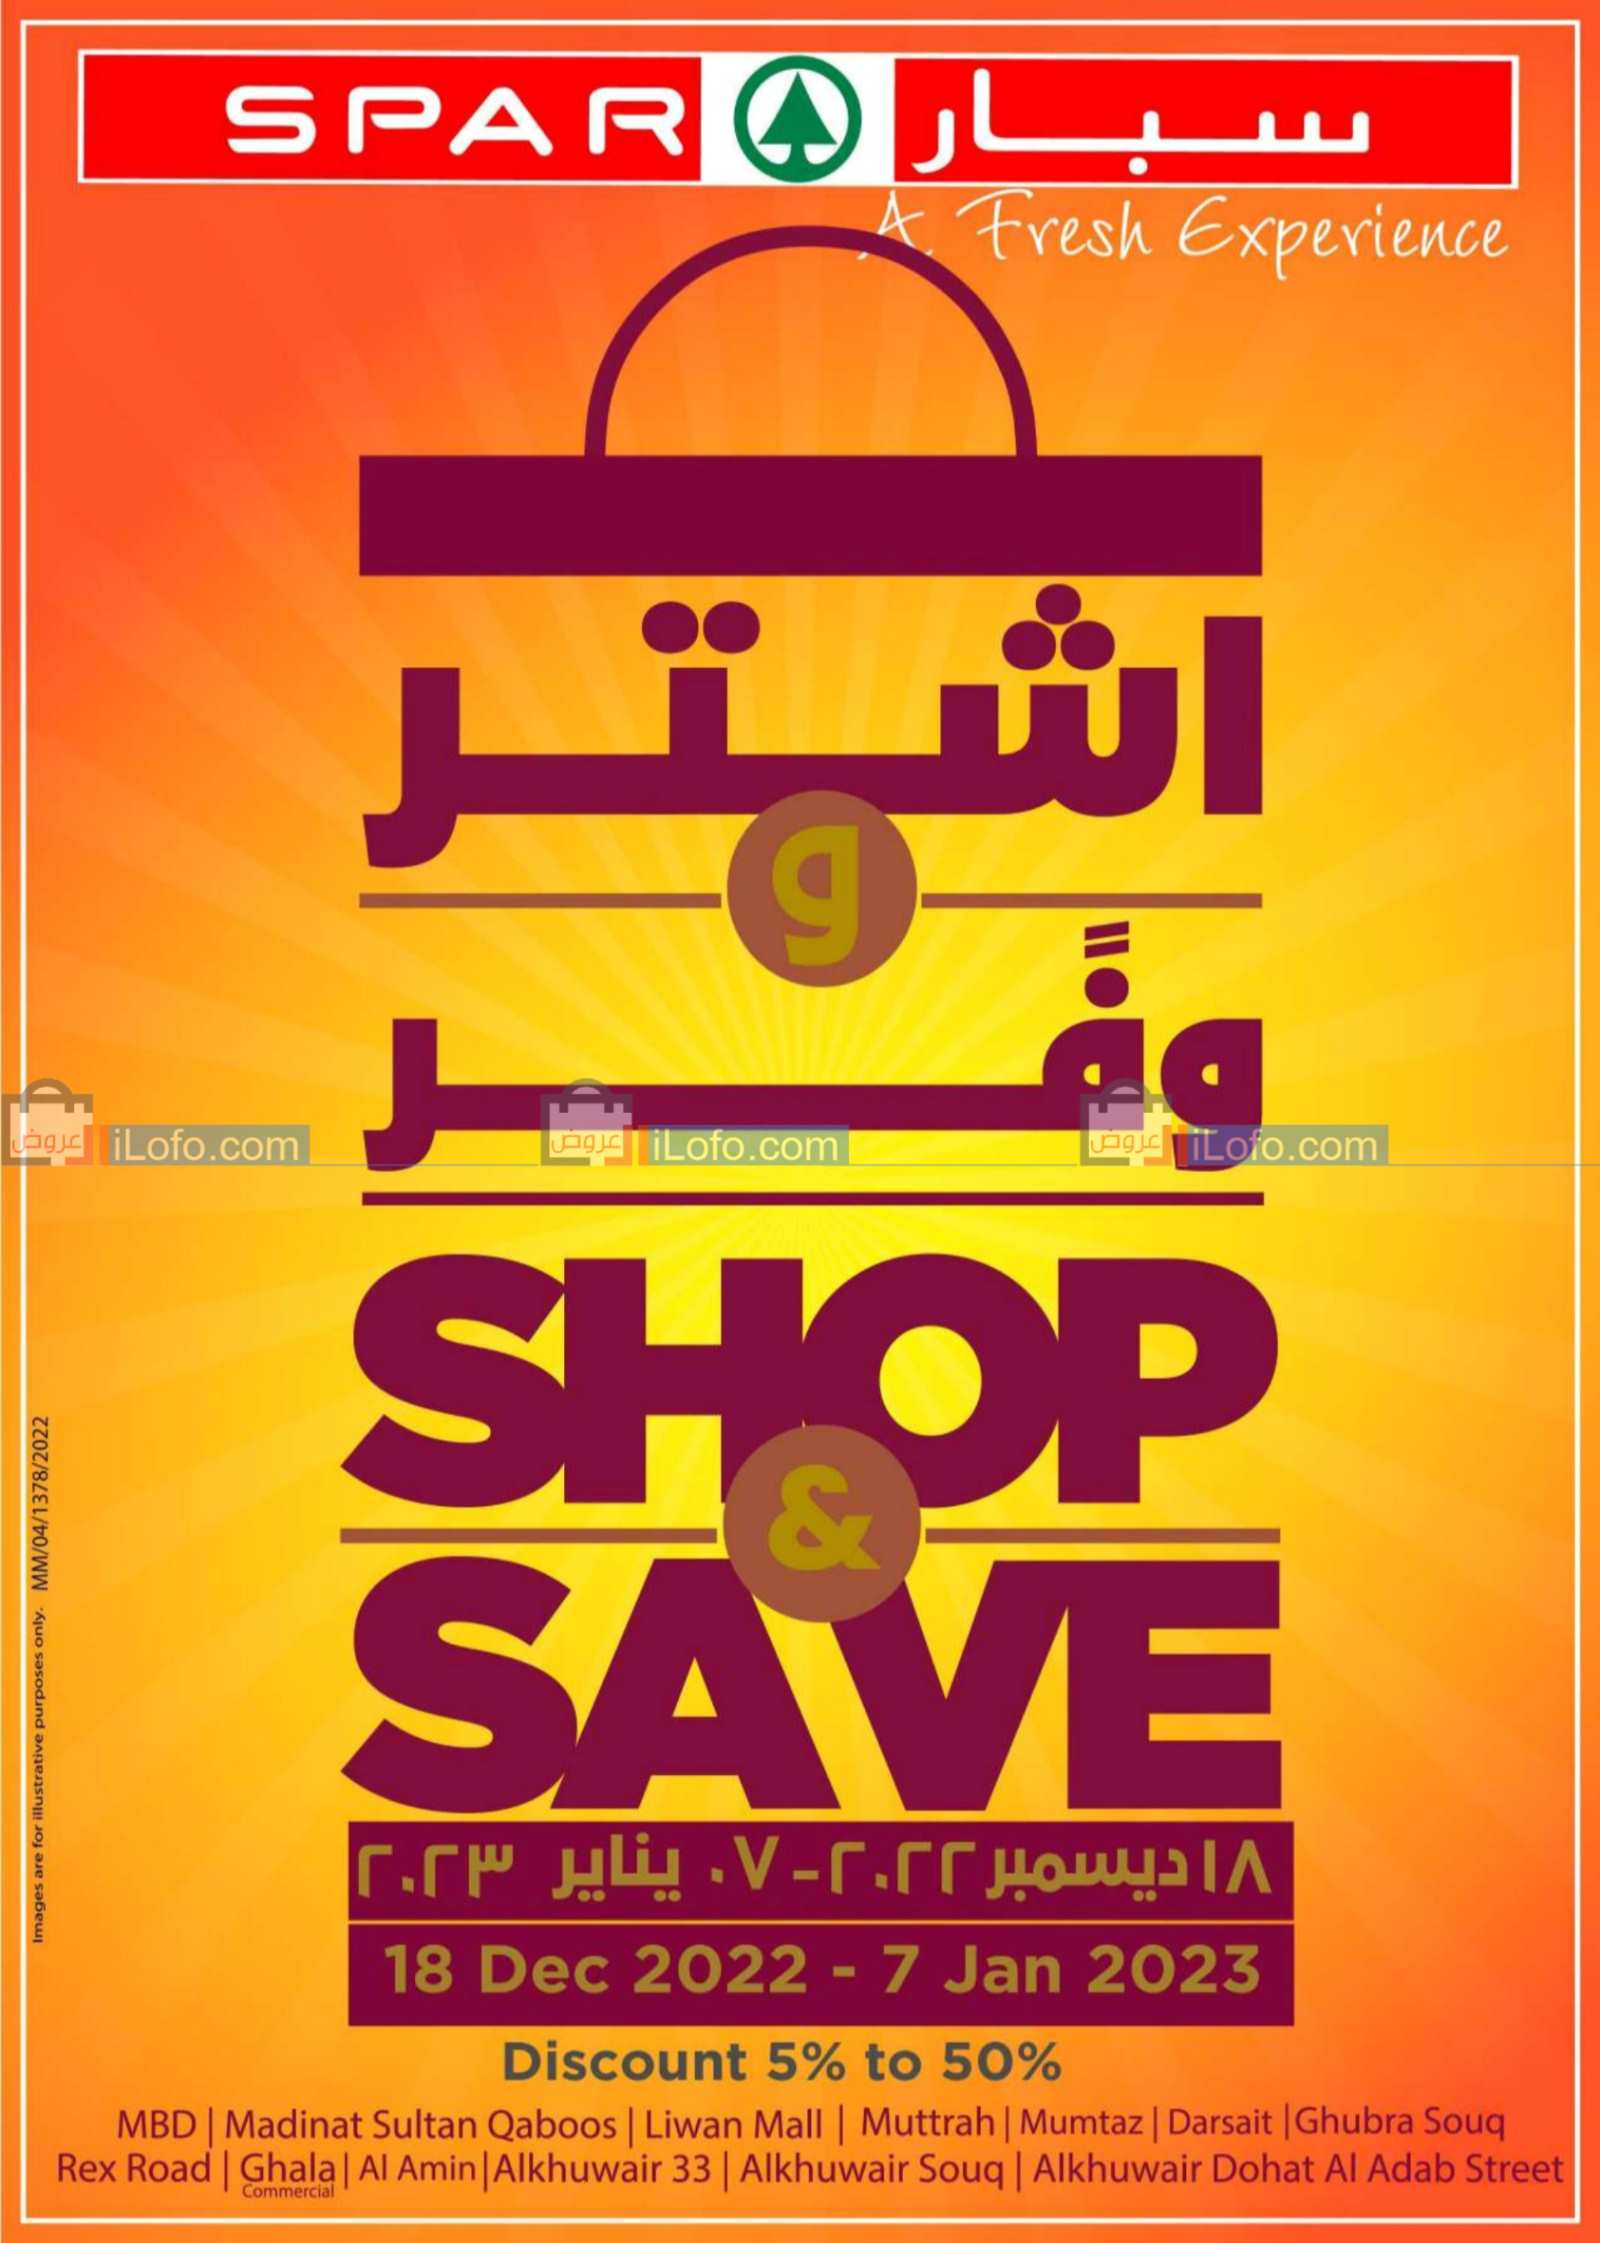 Page 1 at Shop & Save at Spar Oman